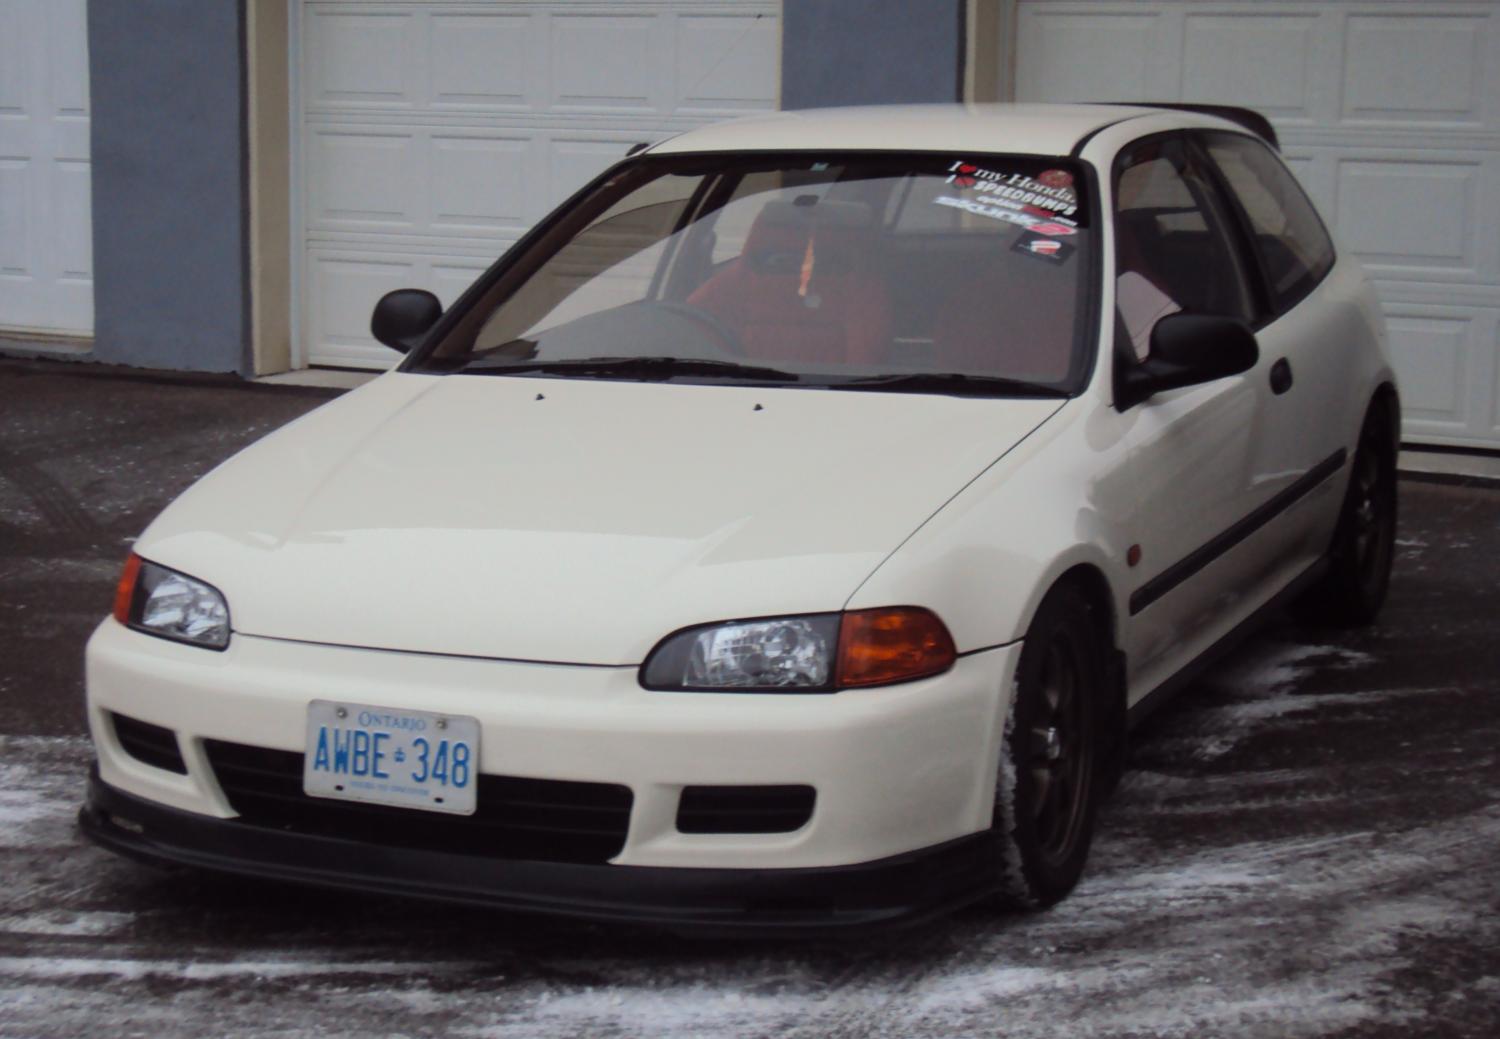 1992 Honda Civic SIR - $8000 - Civic Forumz - Honda Civic ...